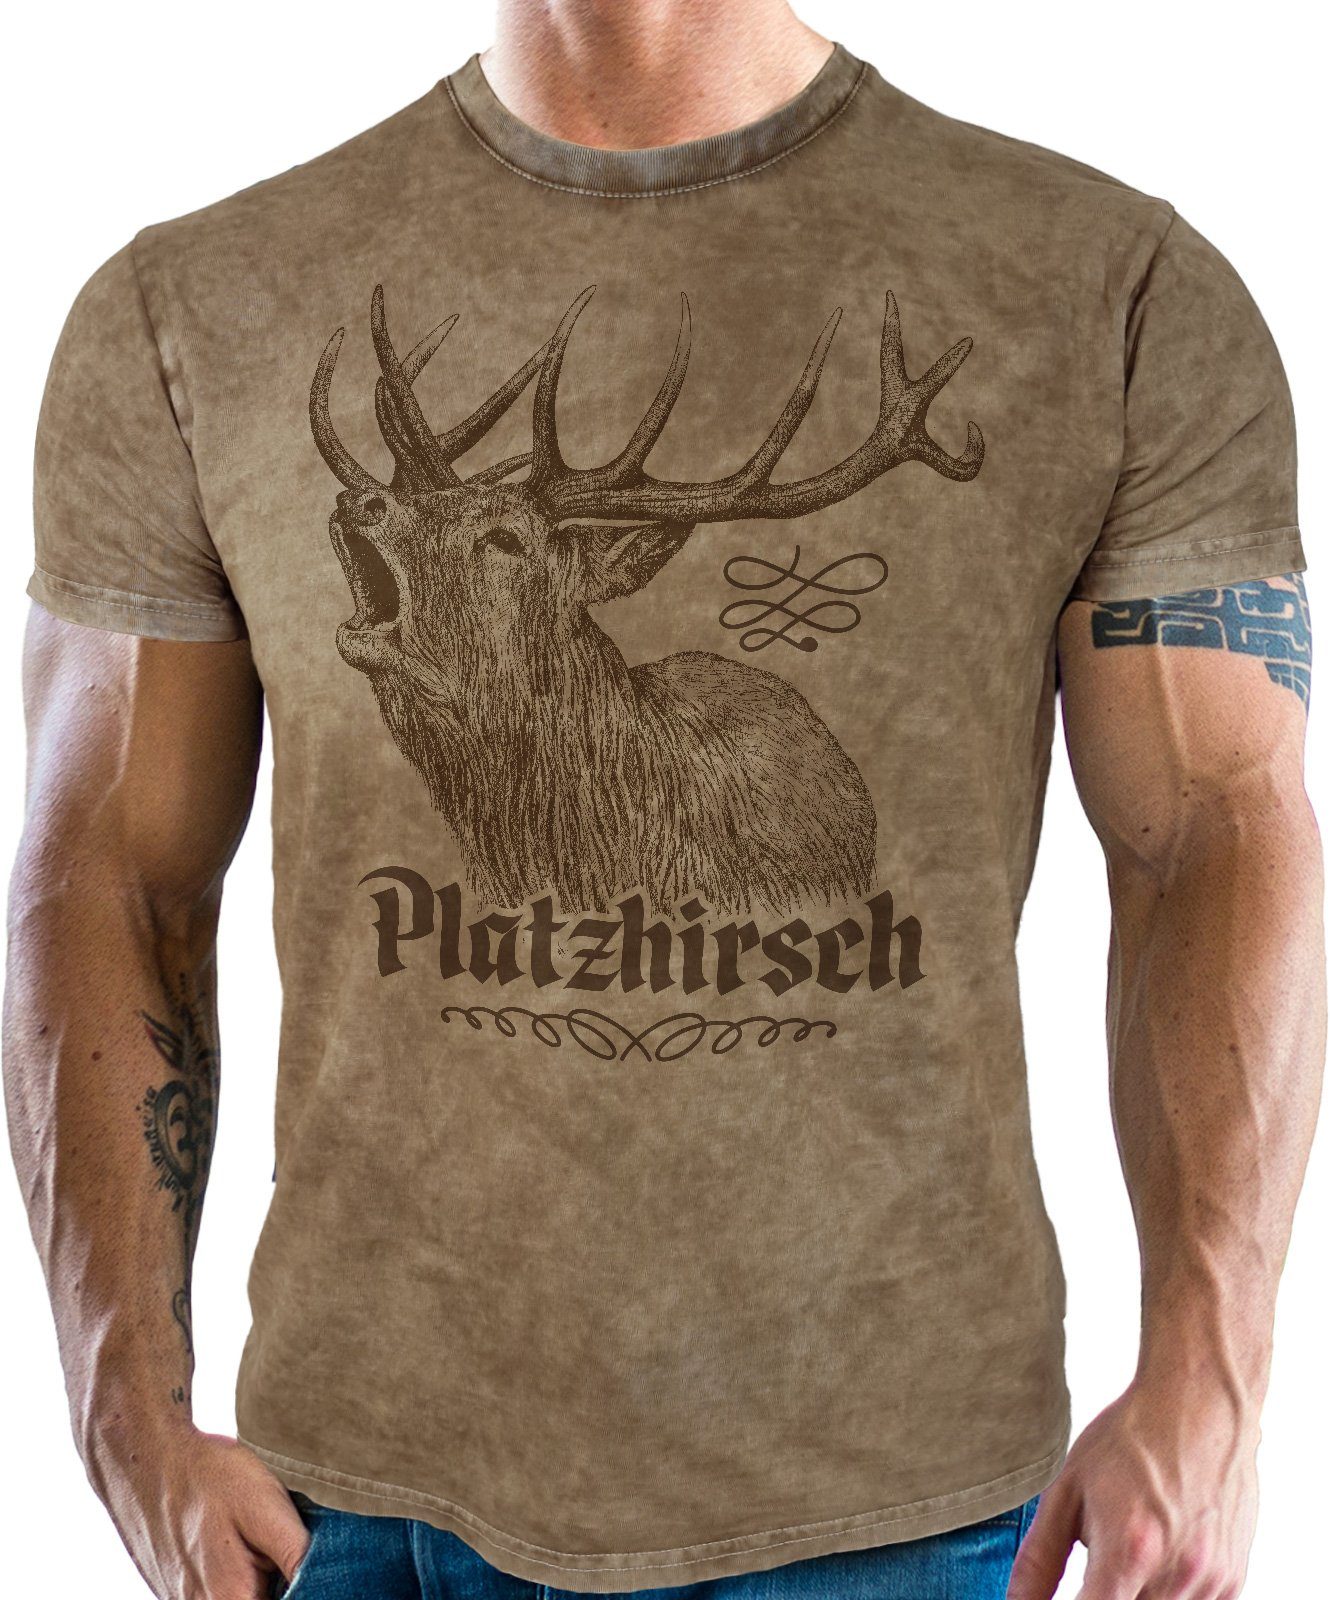 LOBO NEGRO® Platzhirsch Fans Look: Trachtenshirt für vintage used im echte Bayern retro washed